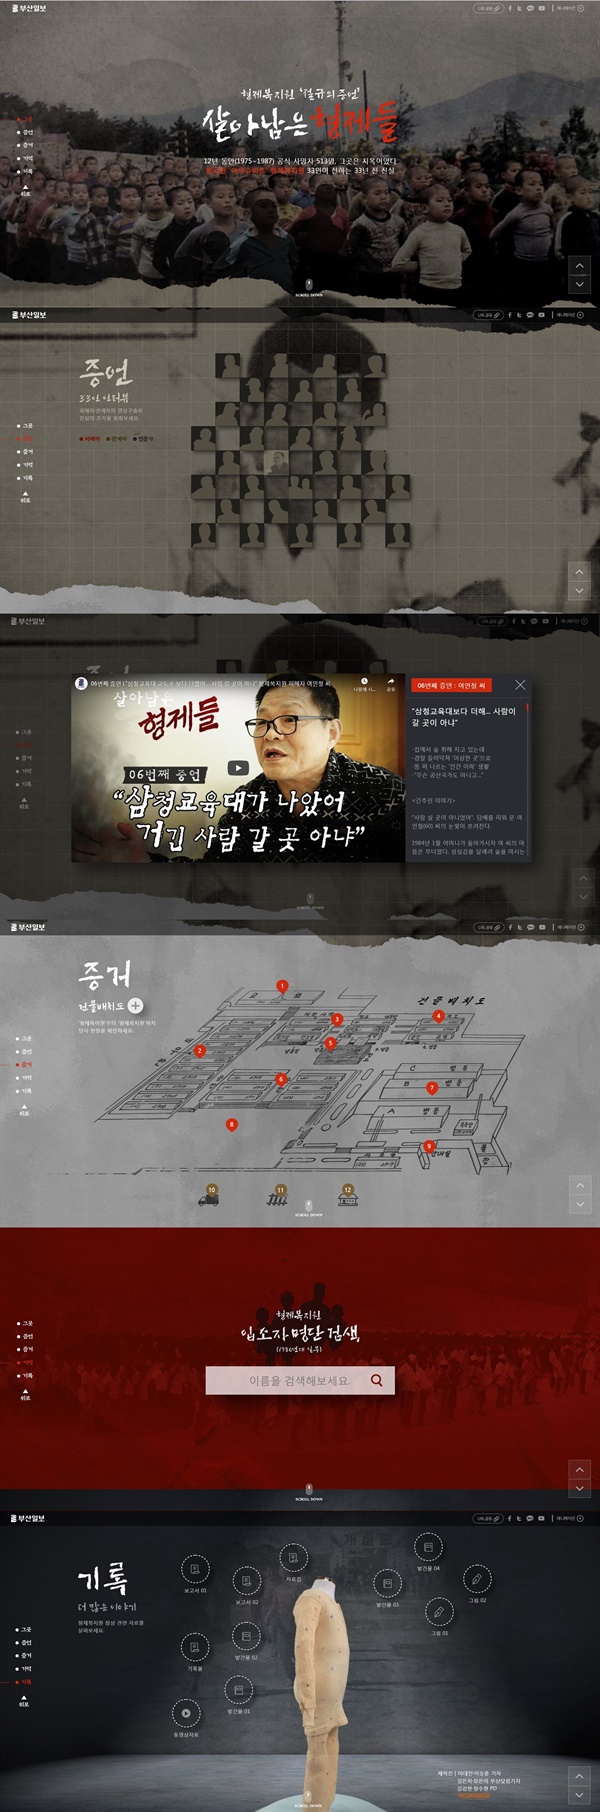 <부산일보> 인터랙티브페이지 캡처 화면